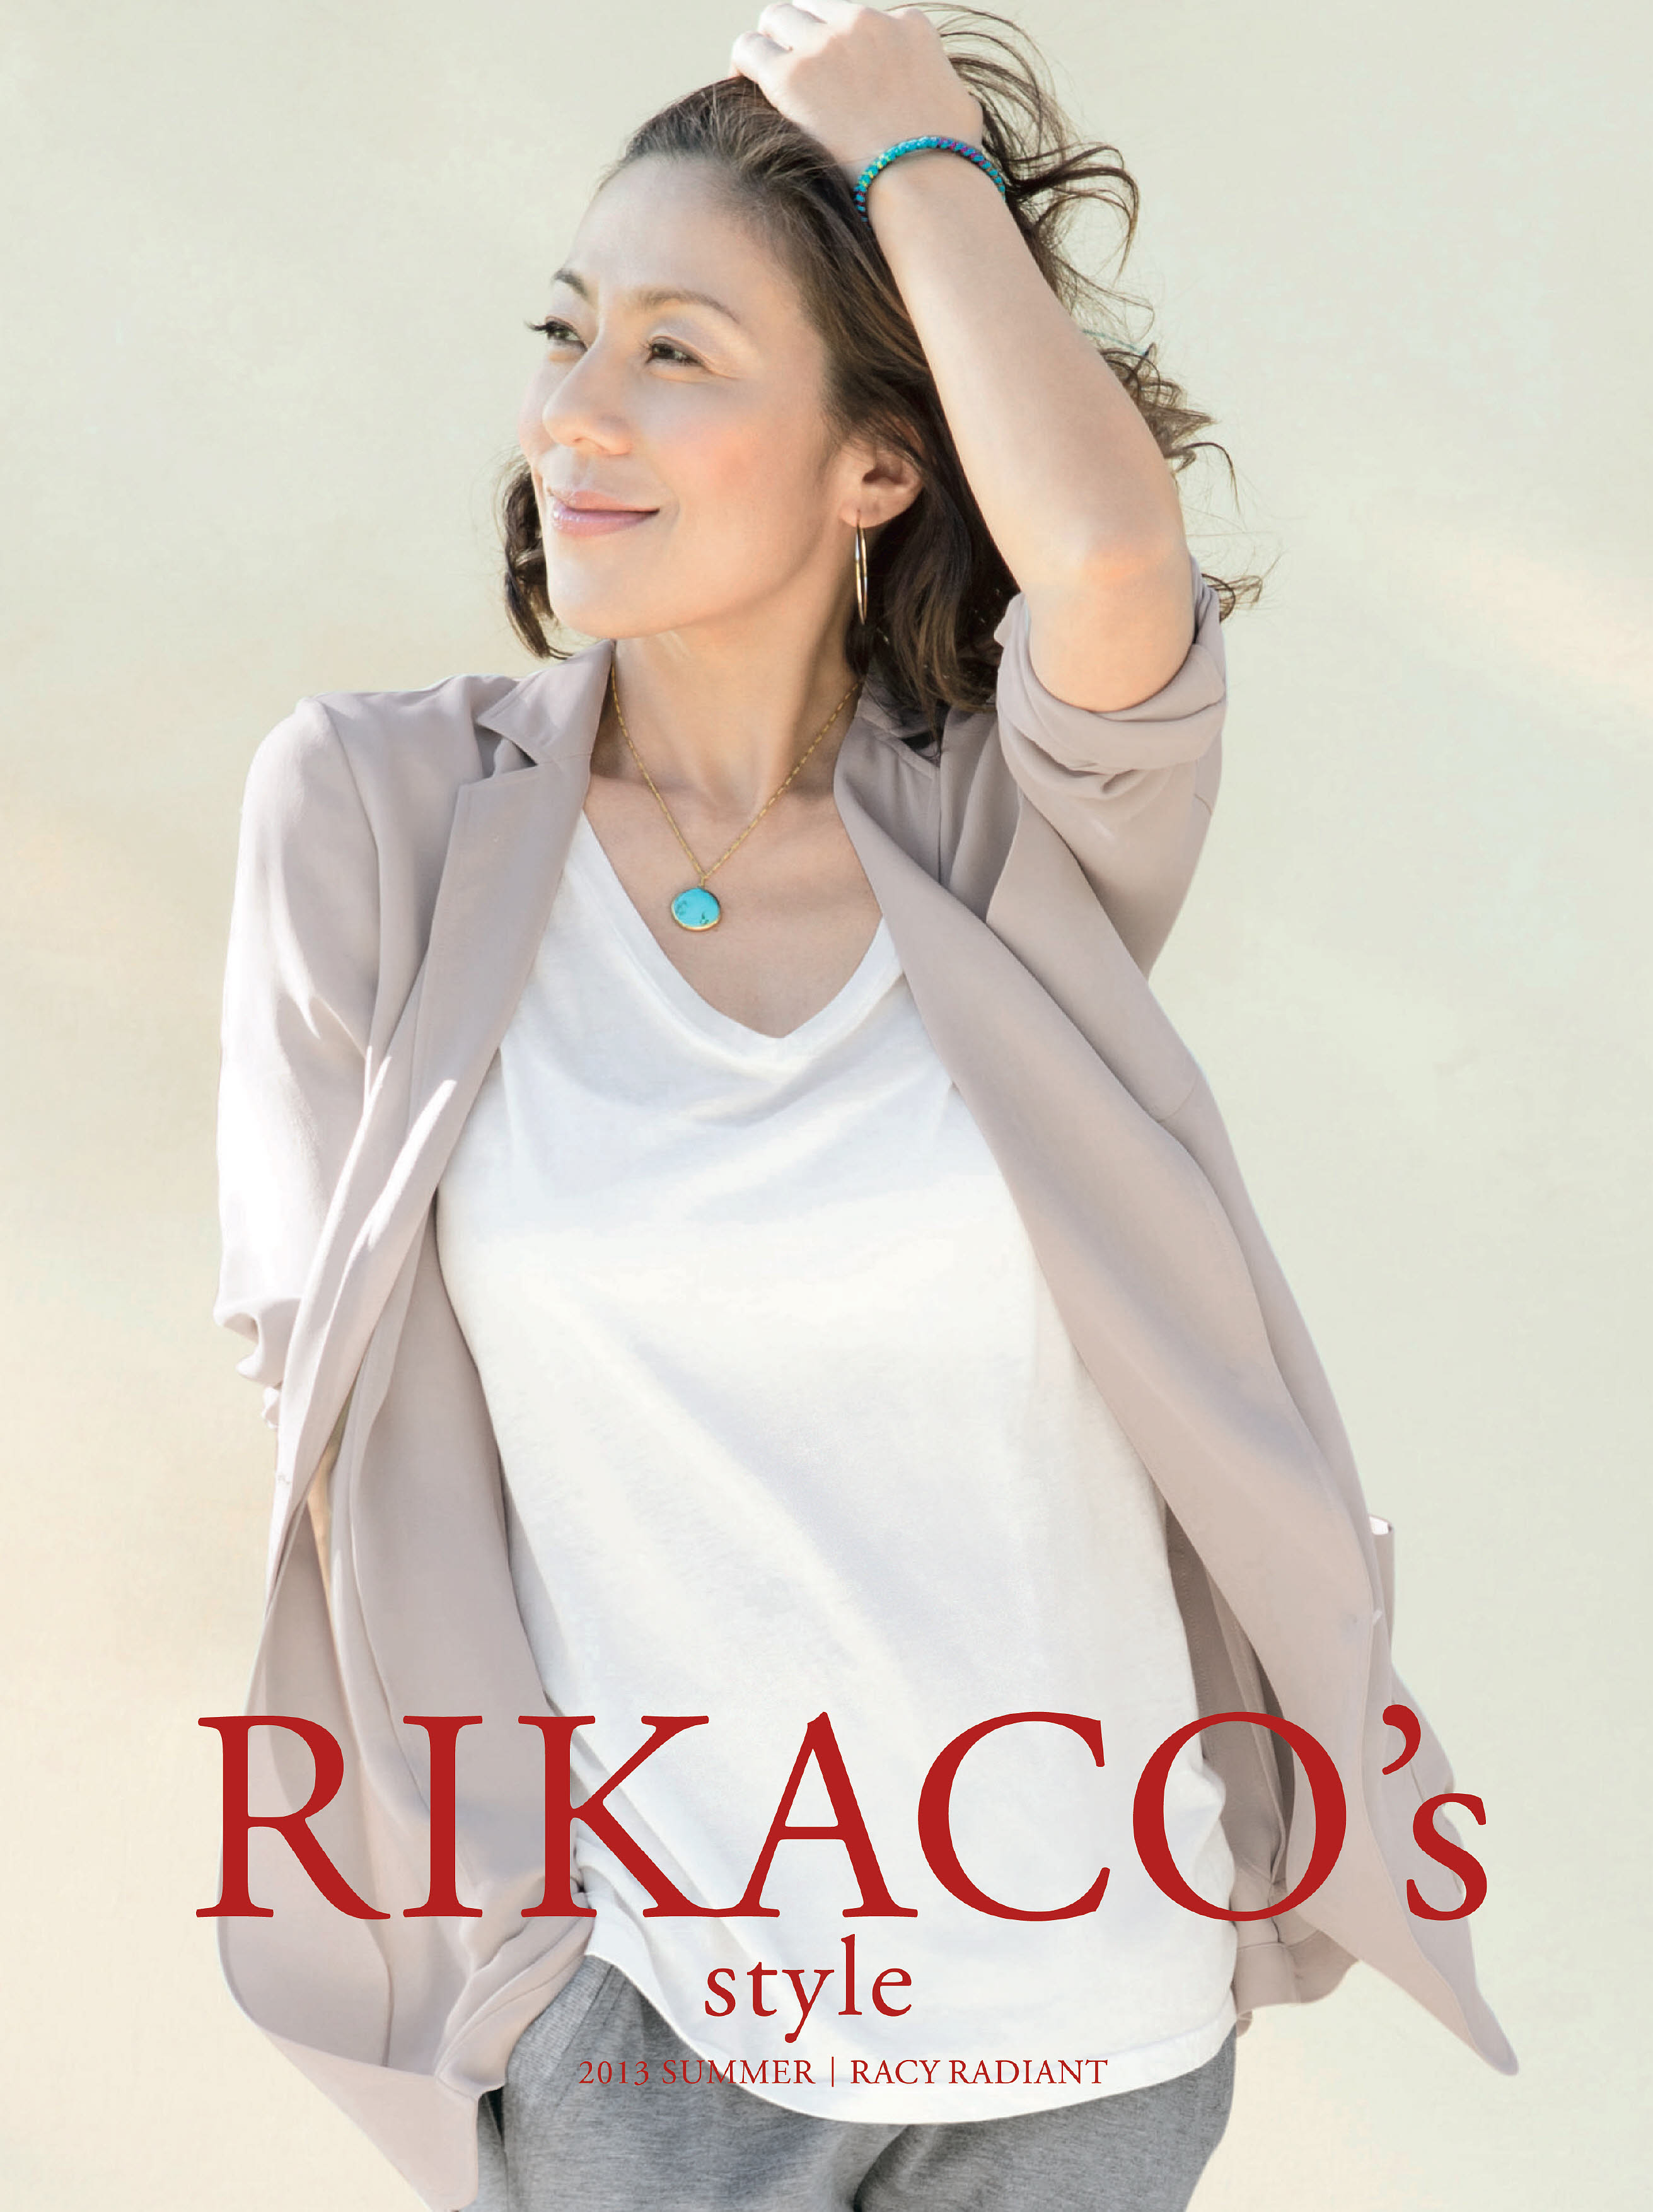 Rikacoプロデュースの13夏向けファッション 絶好調 等身大のrikaco の魅力とこだわりを形にした大人のためのカジュアル 株式会社ディノス セシールのプレスリリース